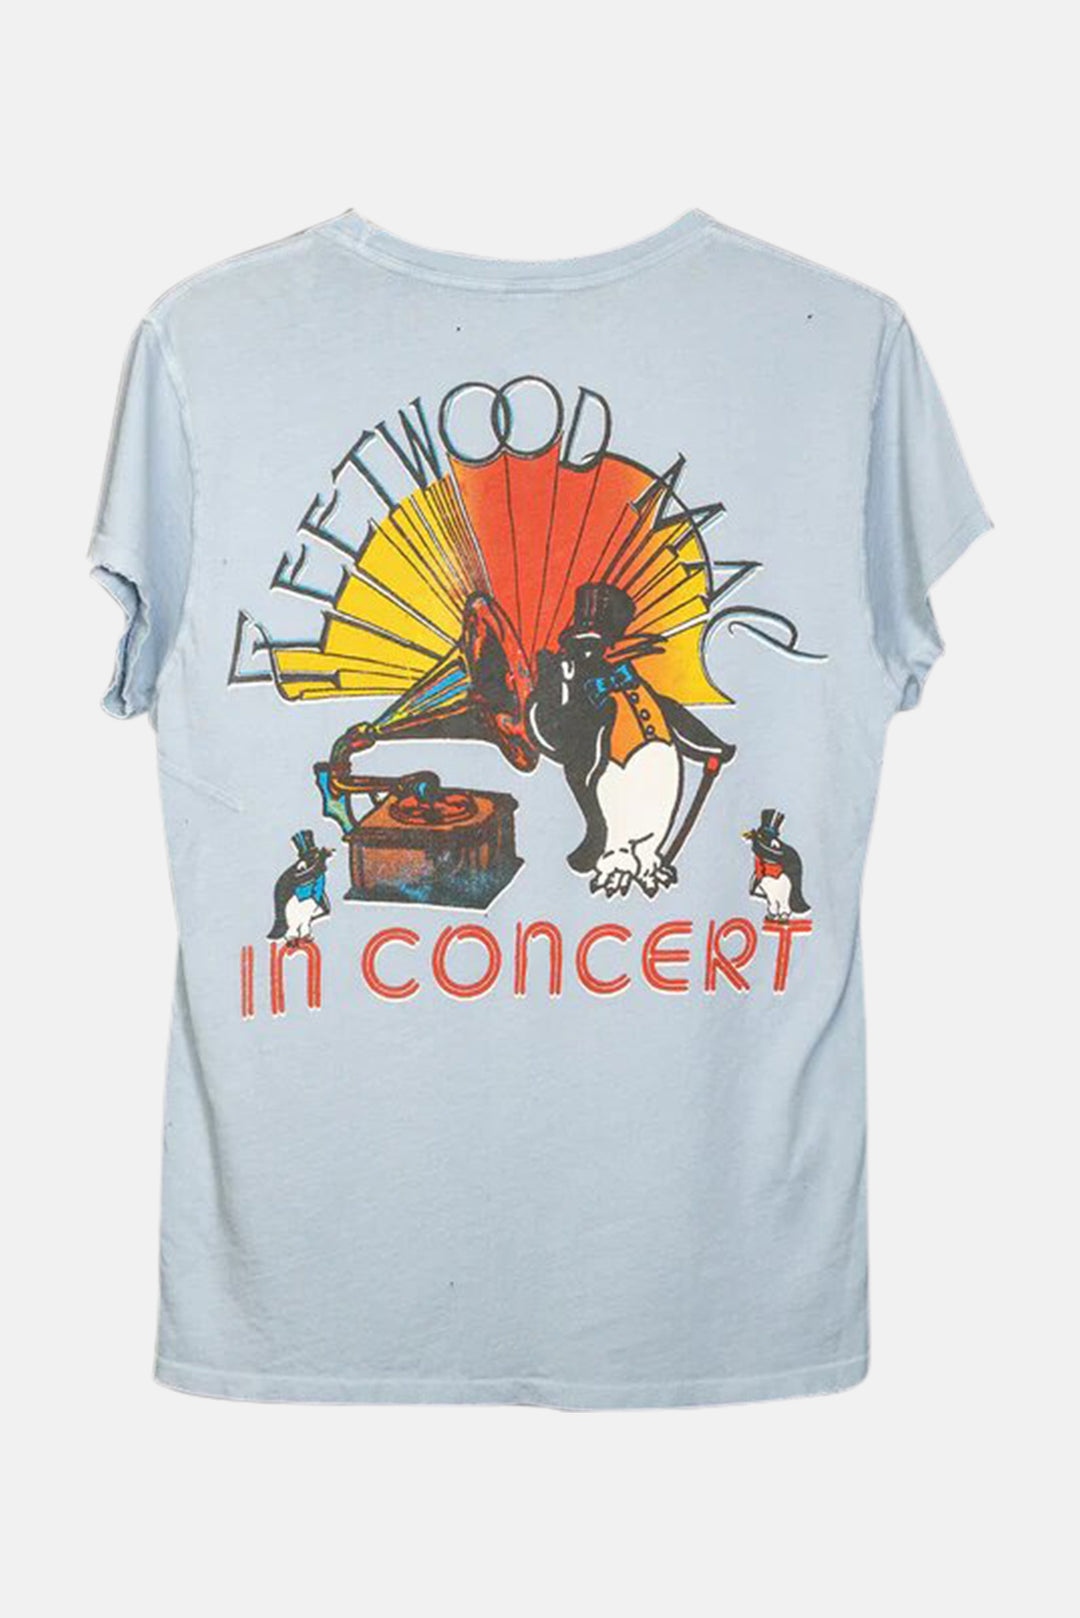 Fleetwood Mac in Concert Pocket Tee Cloud